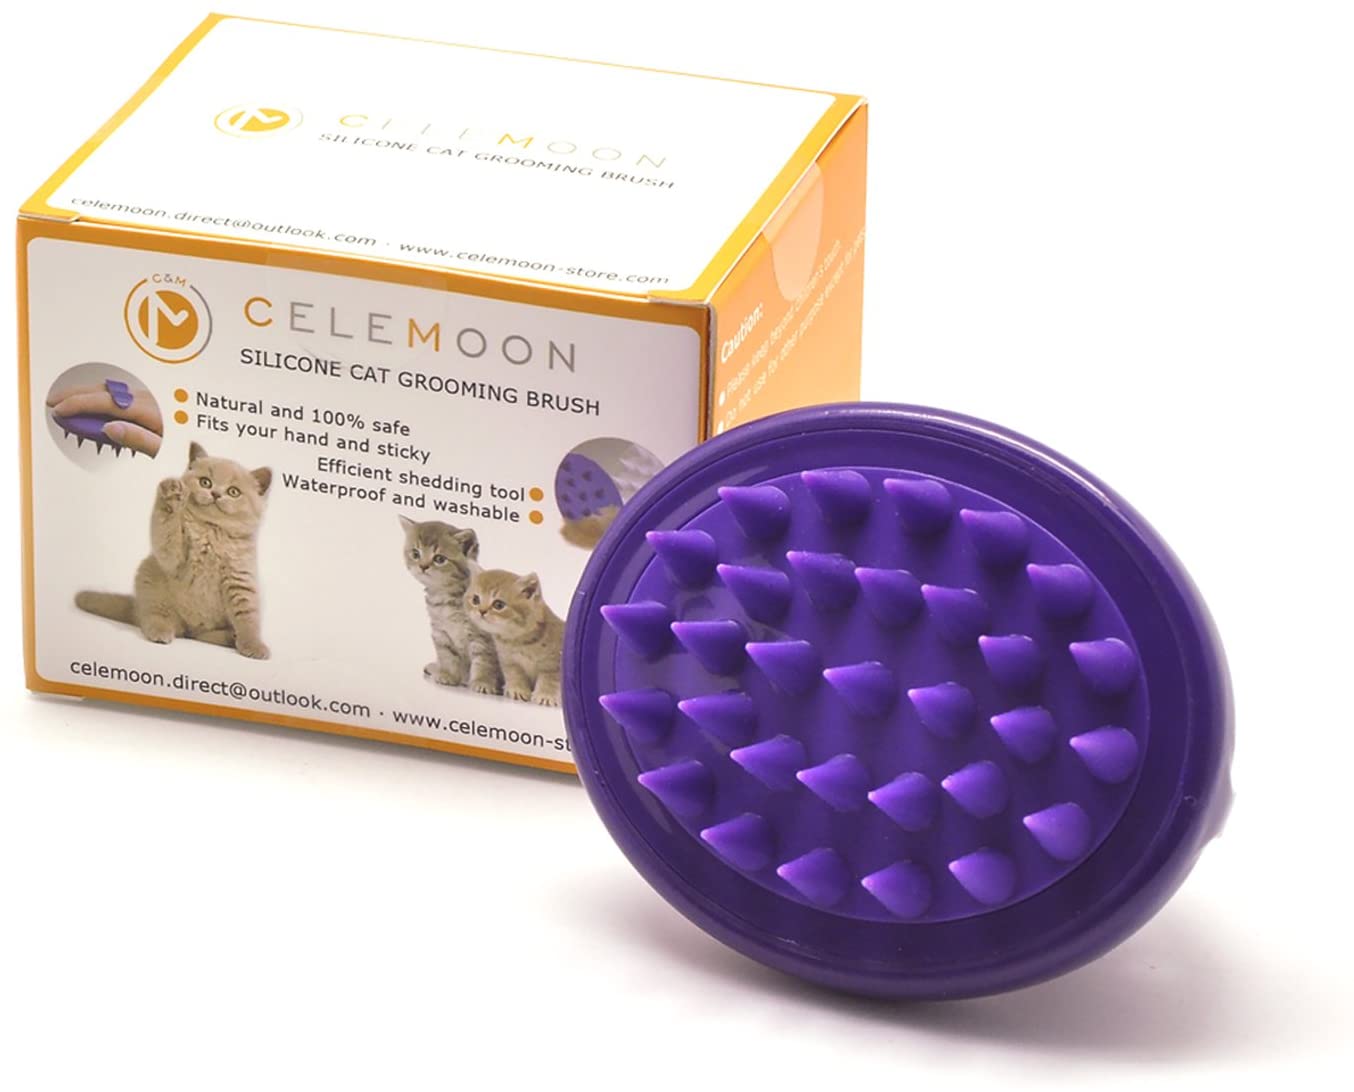  CELEMOON - Cepillo para Gatos, púas de Silicona Suave, Lavable, para masajear y Limpiar a tu Gato, Seguro y sin arañazos, Color Morado 